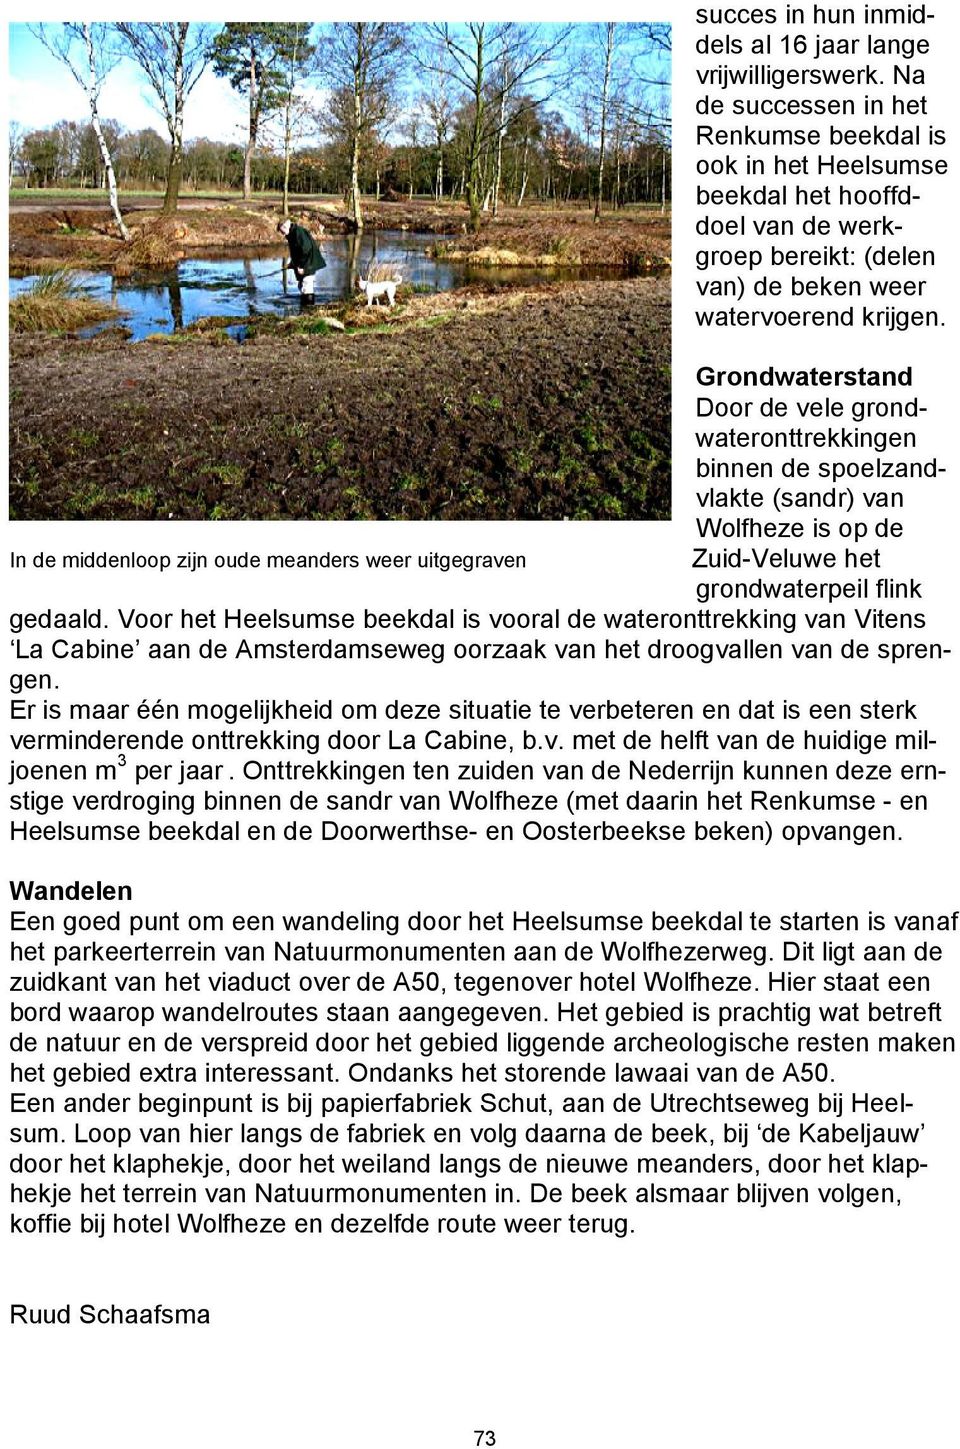 Grondwaterstand Door de vele grondwateronttrekkingen binnen de spoelzandvlakte (sandr) van Wolfheze is op de Zuid-Veluwe het grondwaterpeil flink gedaald.